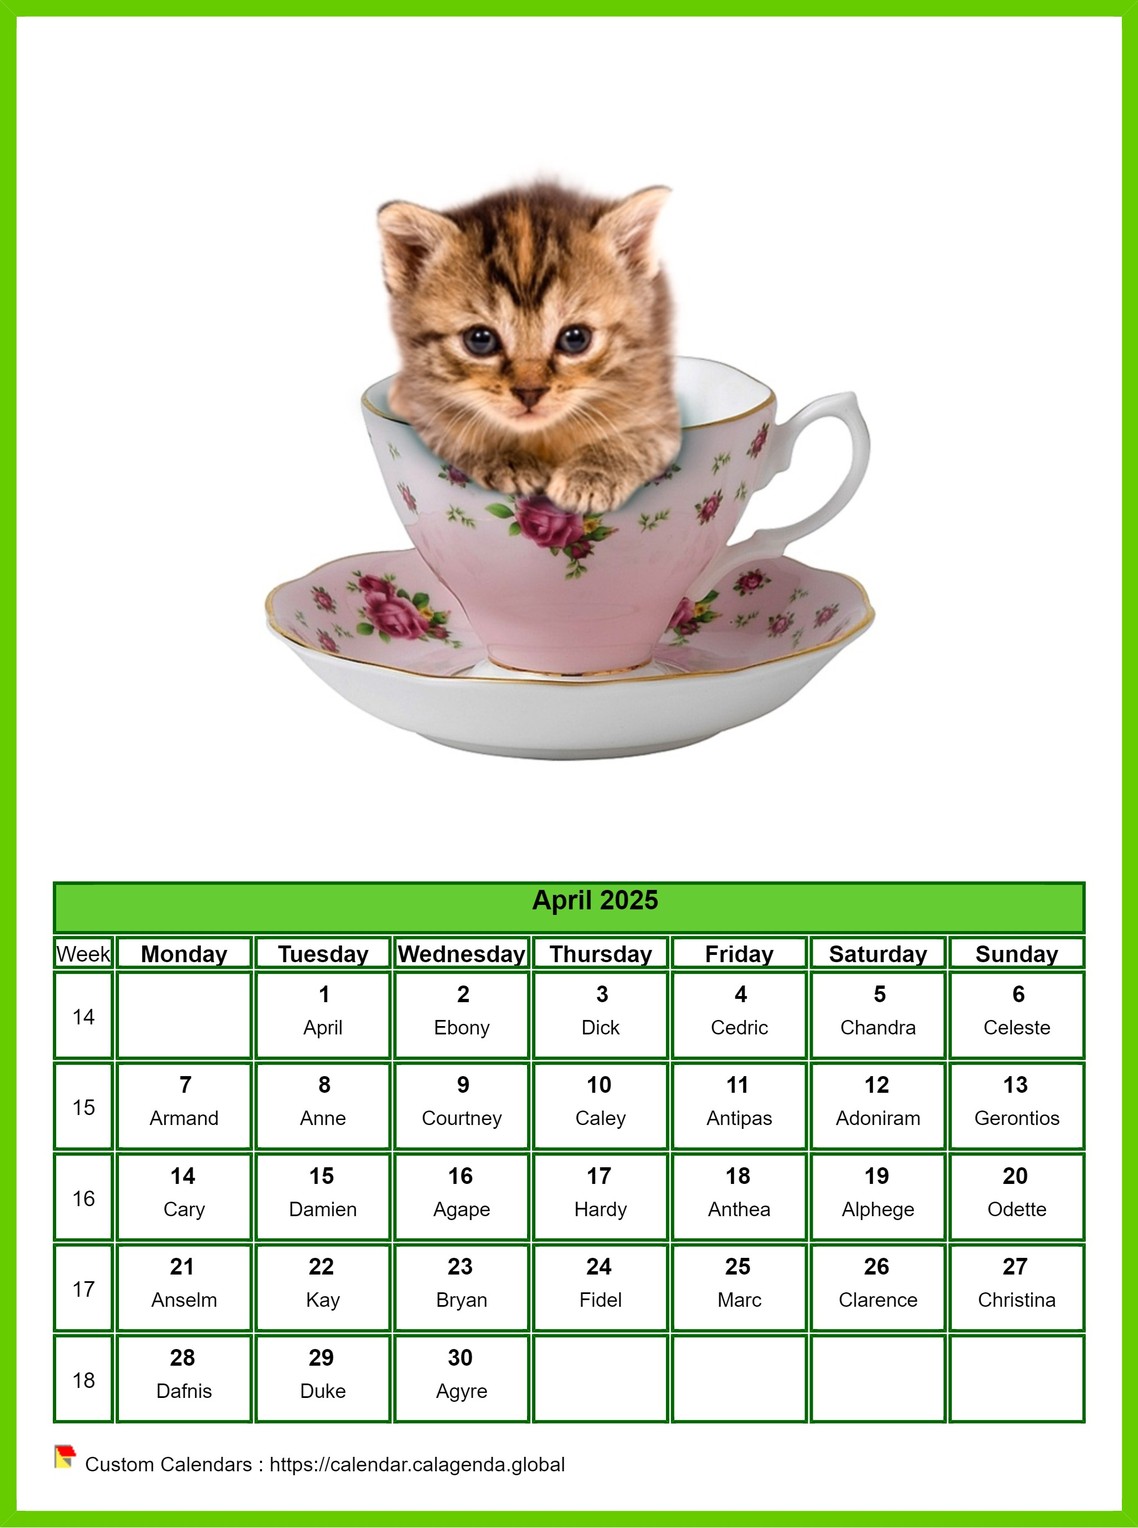 Calendar April 2025 cats